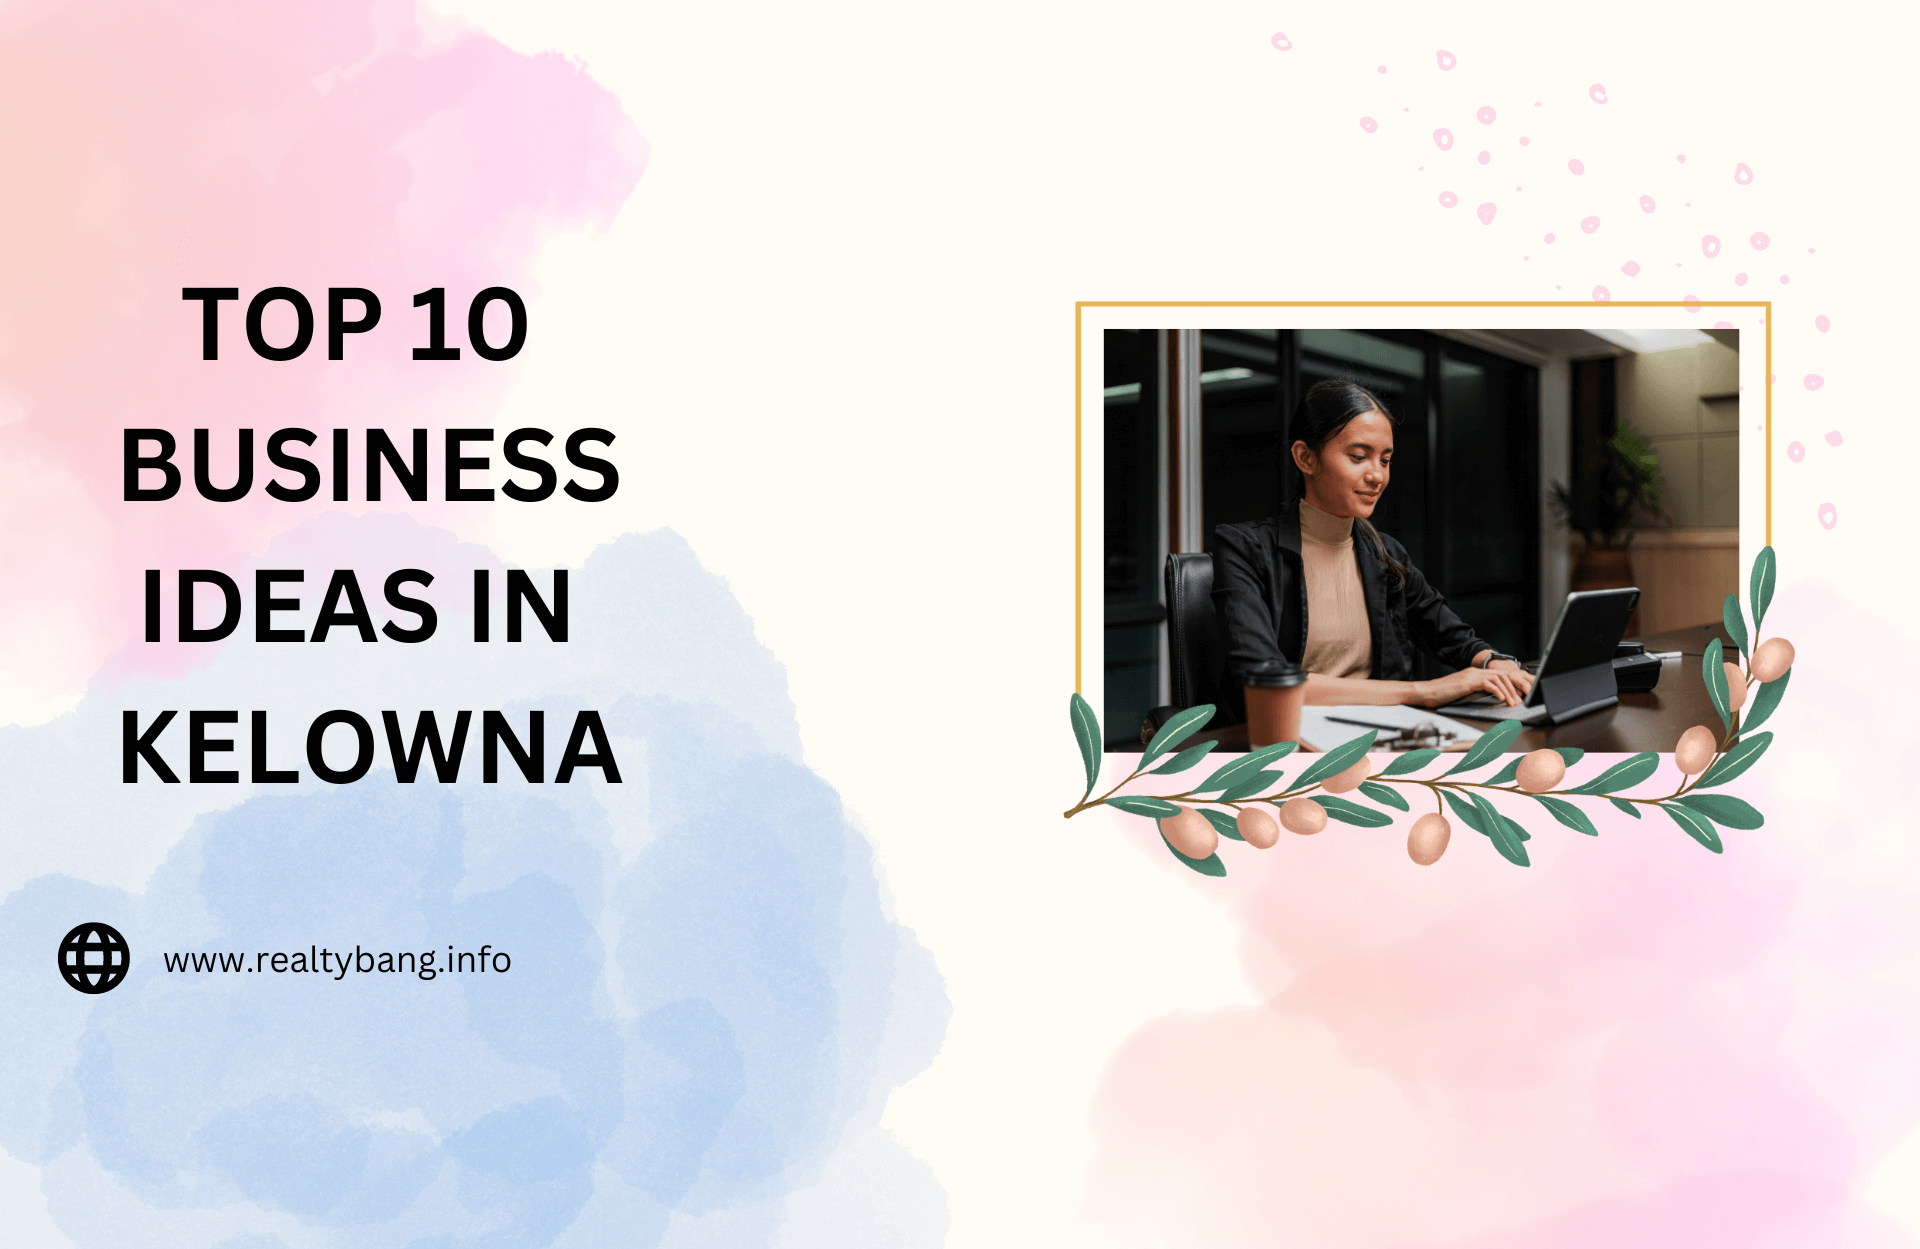 TOP 10 BUSINESS IDEAS IN KELOWNA